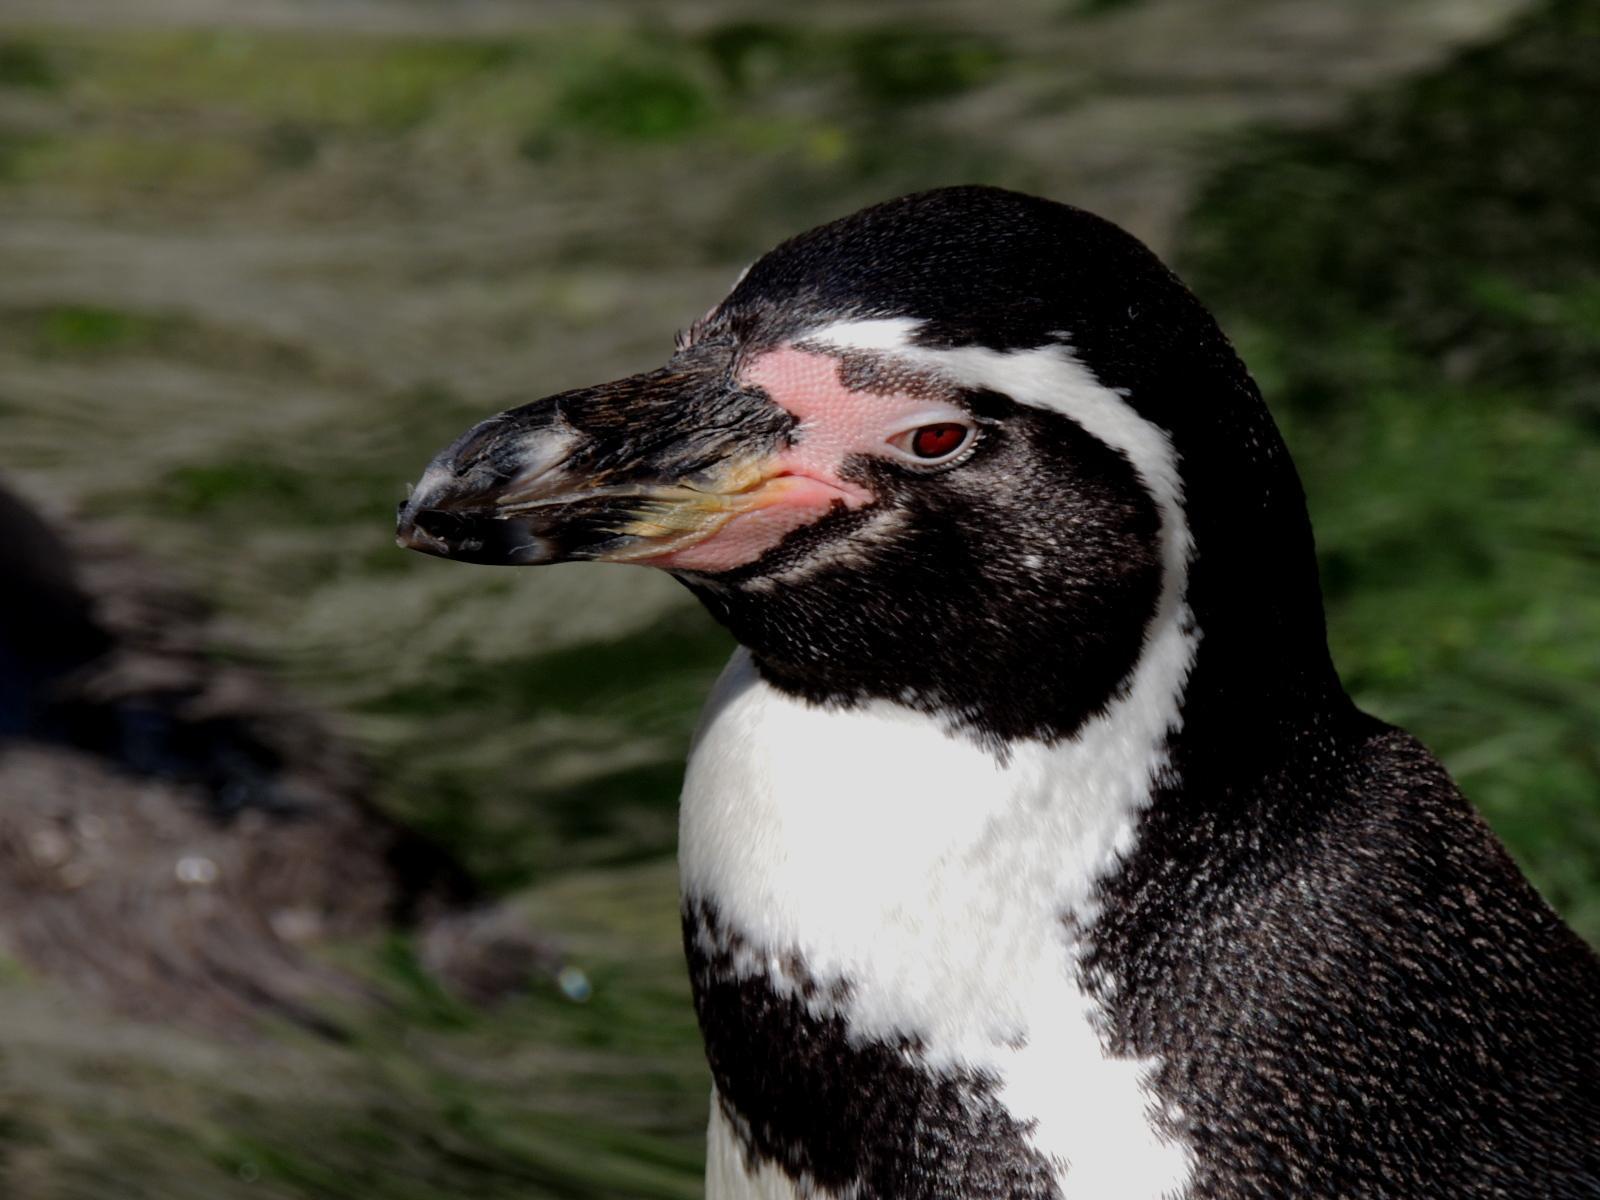 Humboldt Penguin Photo by Tony Heindel